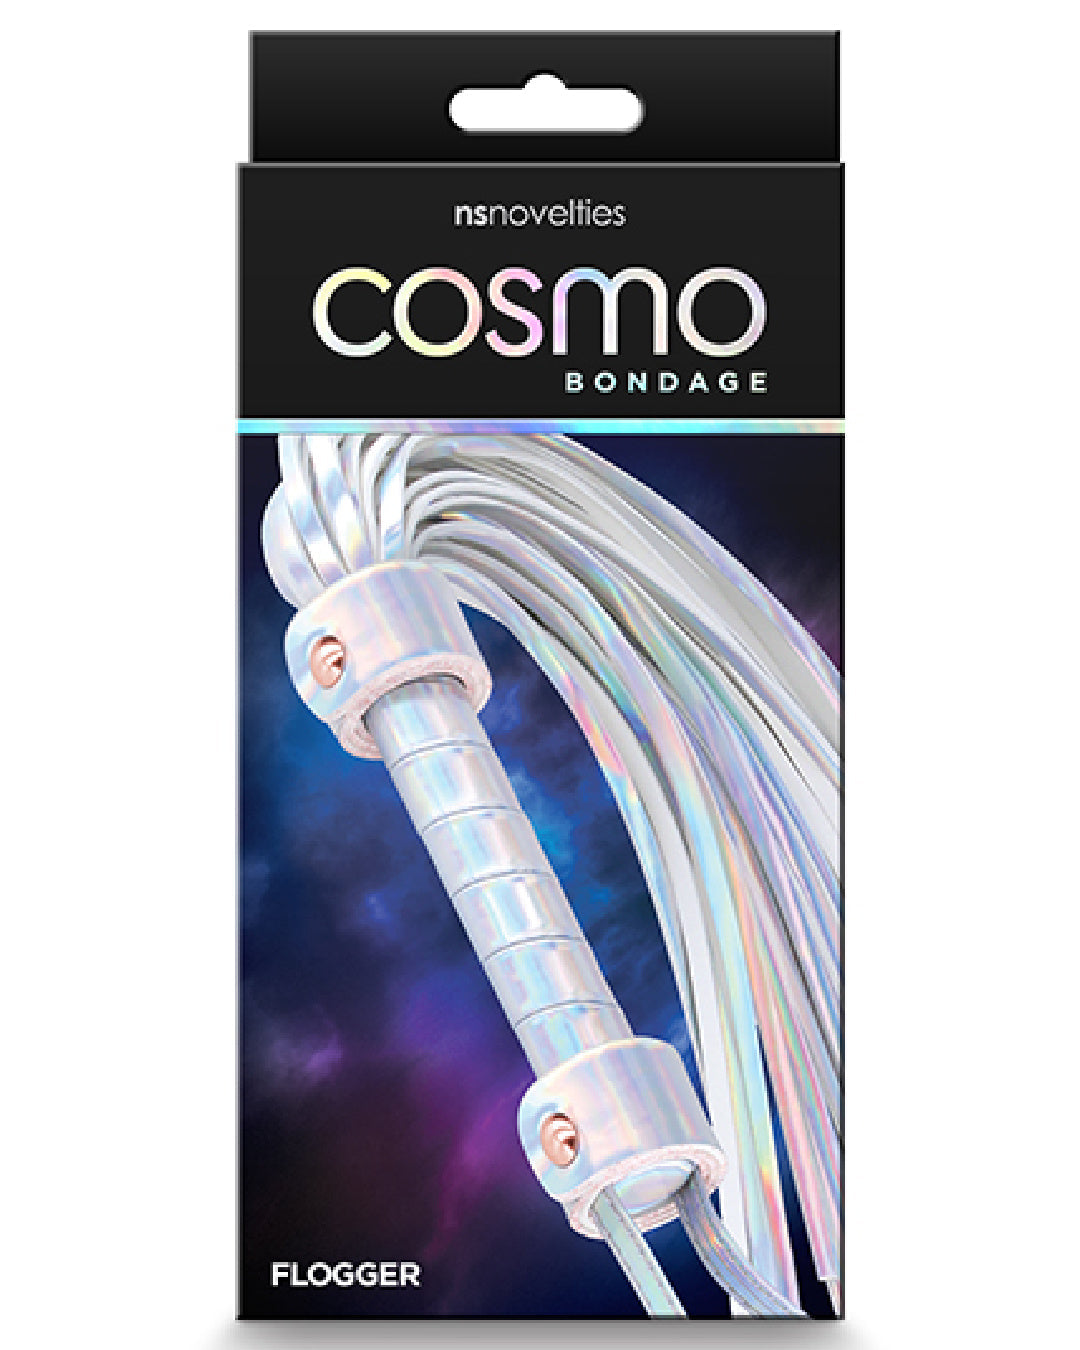 Cosmo Bondage Holographic Flogger product box 